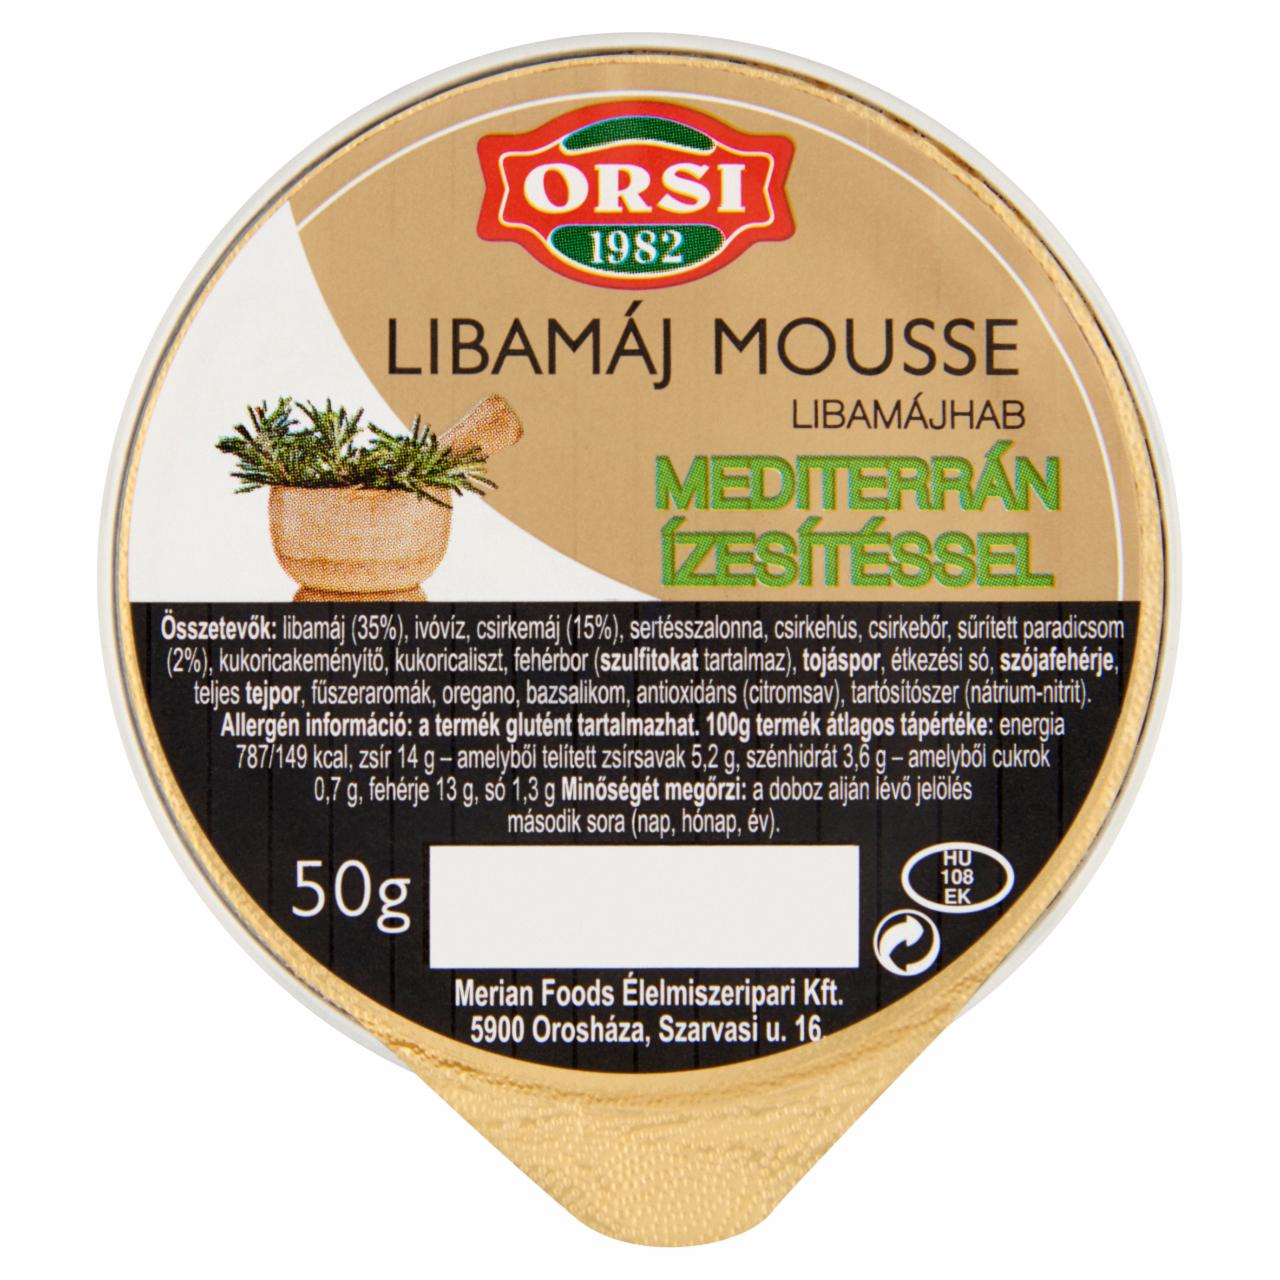 Képek - Orsi libamáj mousse mediterrán ízesítéssel 50 g